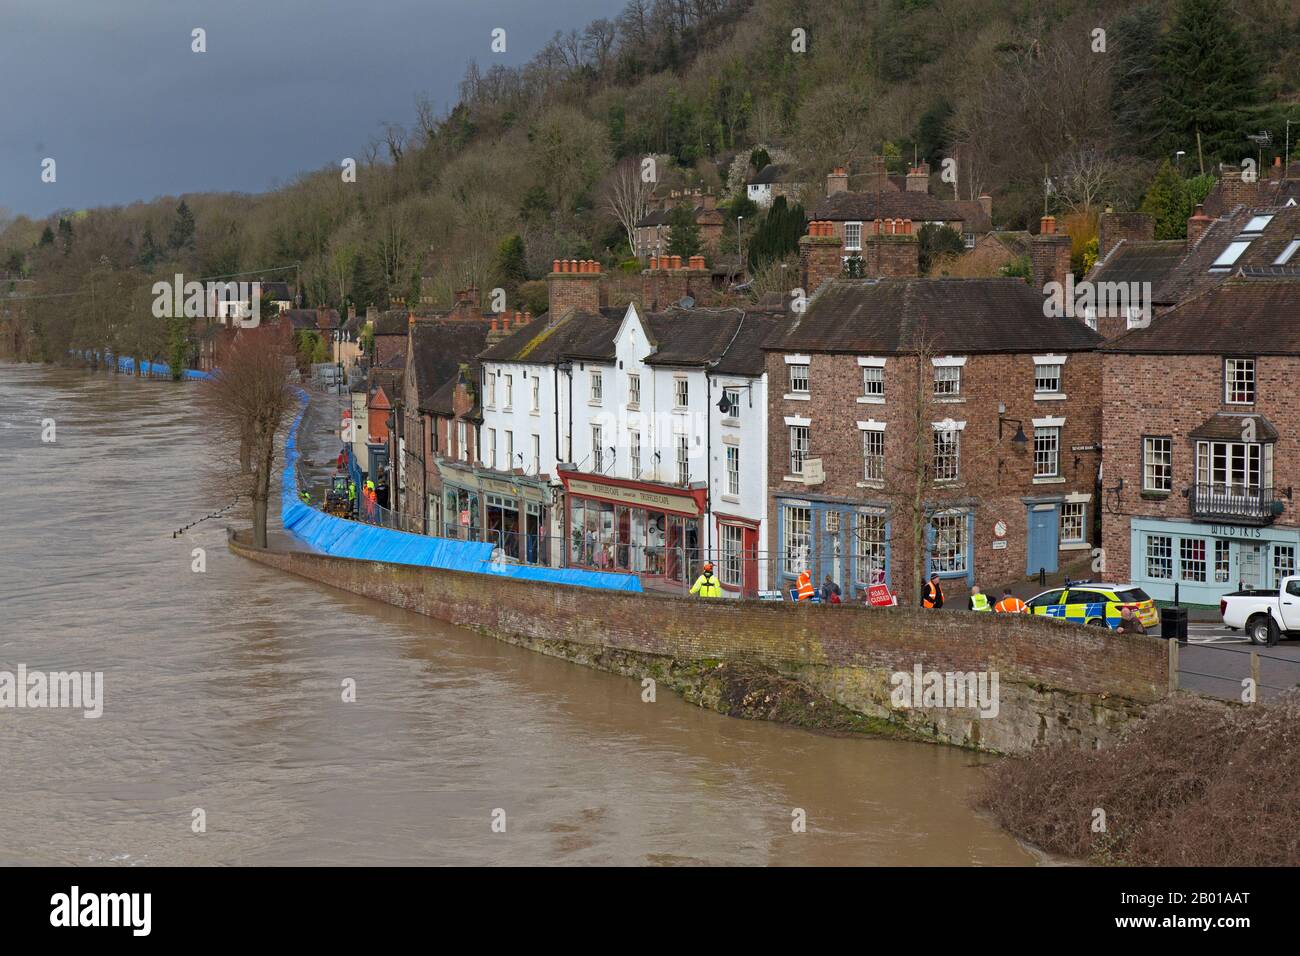 Februar 2020. Der Fluss Severn überschwemmt in Ironbridge, Shropshire, England. Eine temporäre Hochwassersperre kämpft dafür, den Fluss zurückzuhalten, der seit 20 Jahren seinen höchsten Punkt erreicht hat und Häuser und Unternehmen entlang des Flussufern der Ironbridge Gorge bedroht. Die Ironbridge Gorge ist ein Weltkulturerbe. Stockfoto